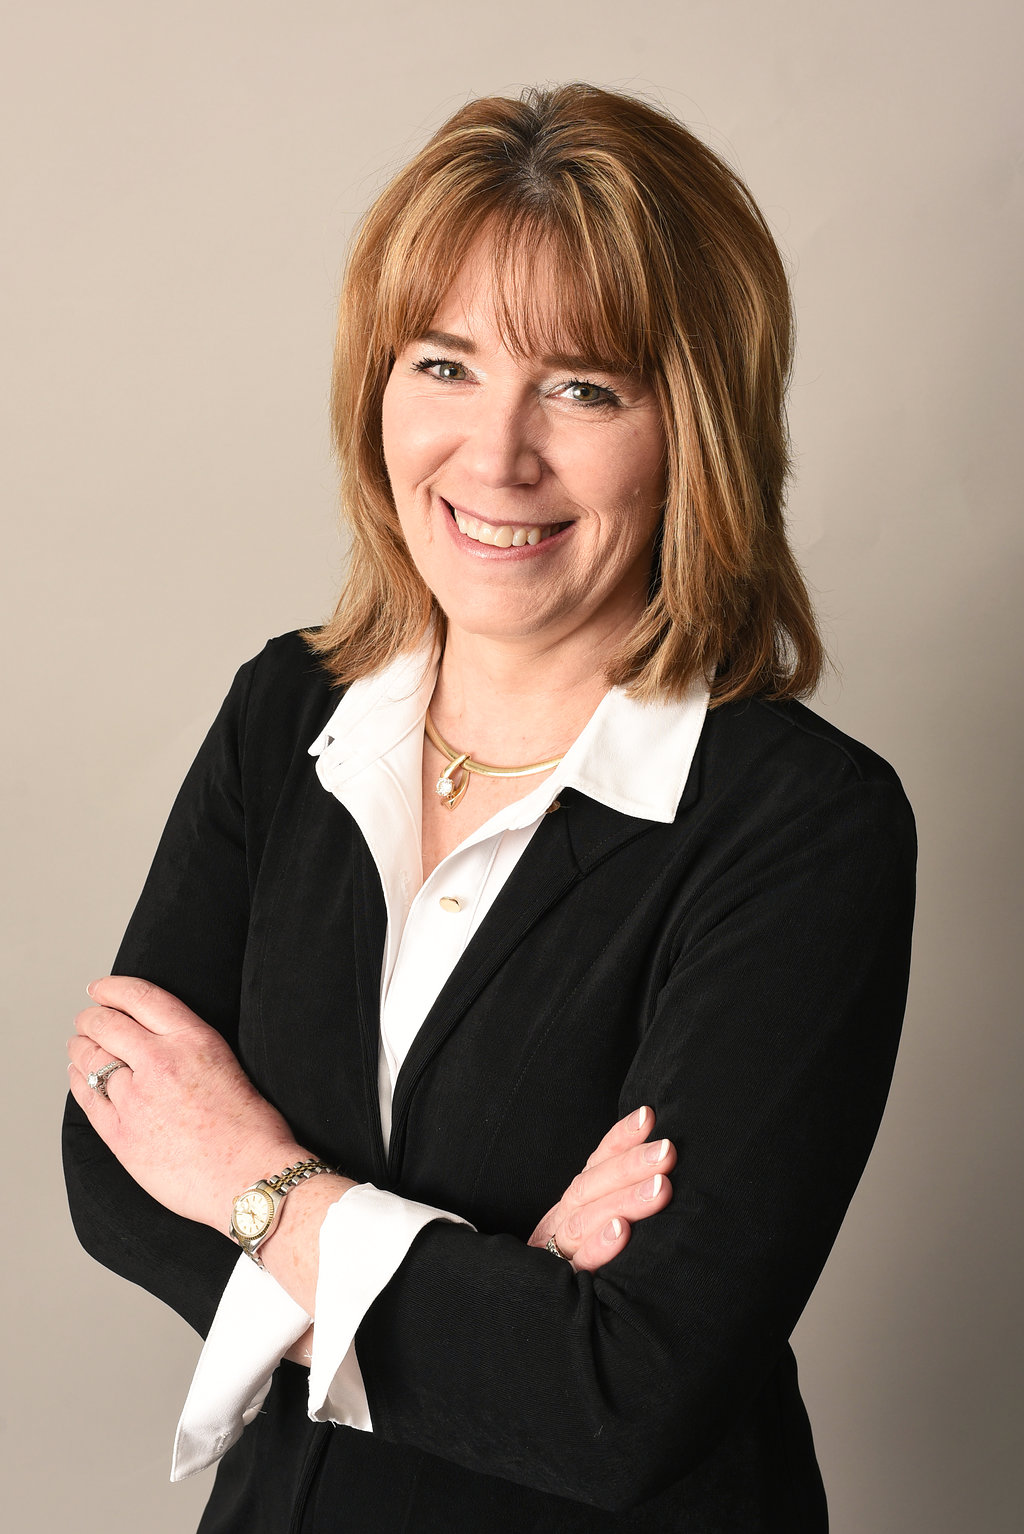 Lisa Bailey, Owner/President